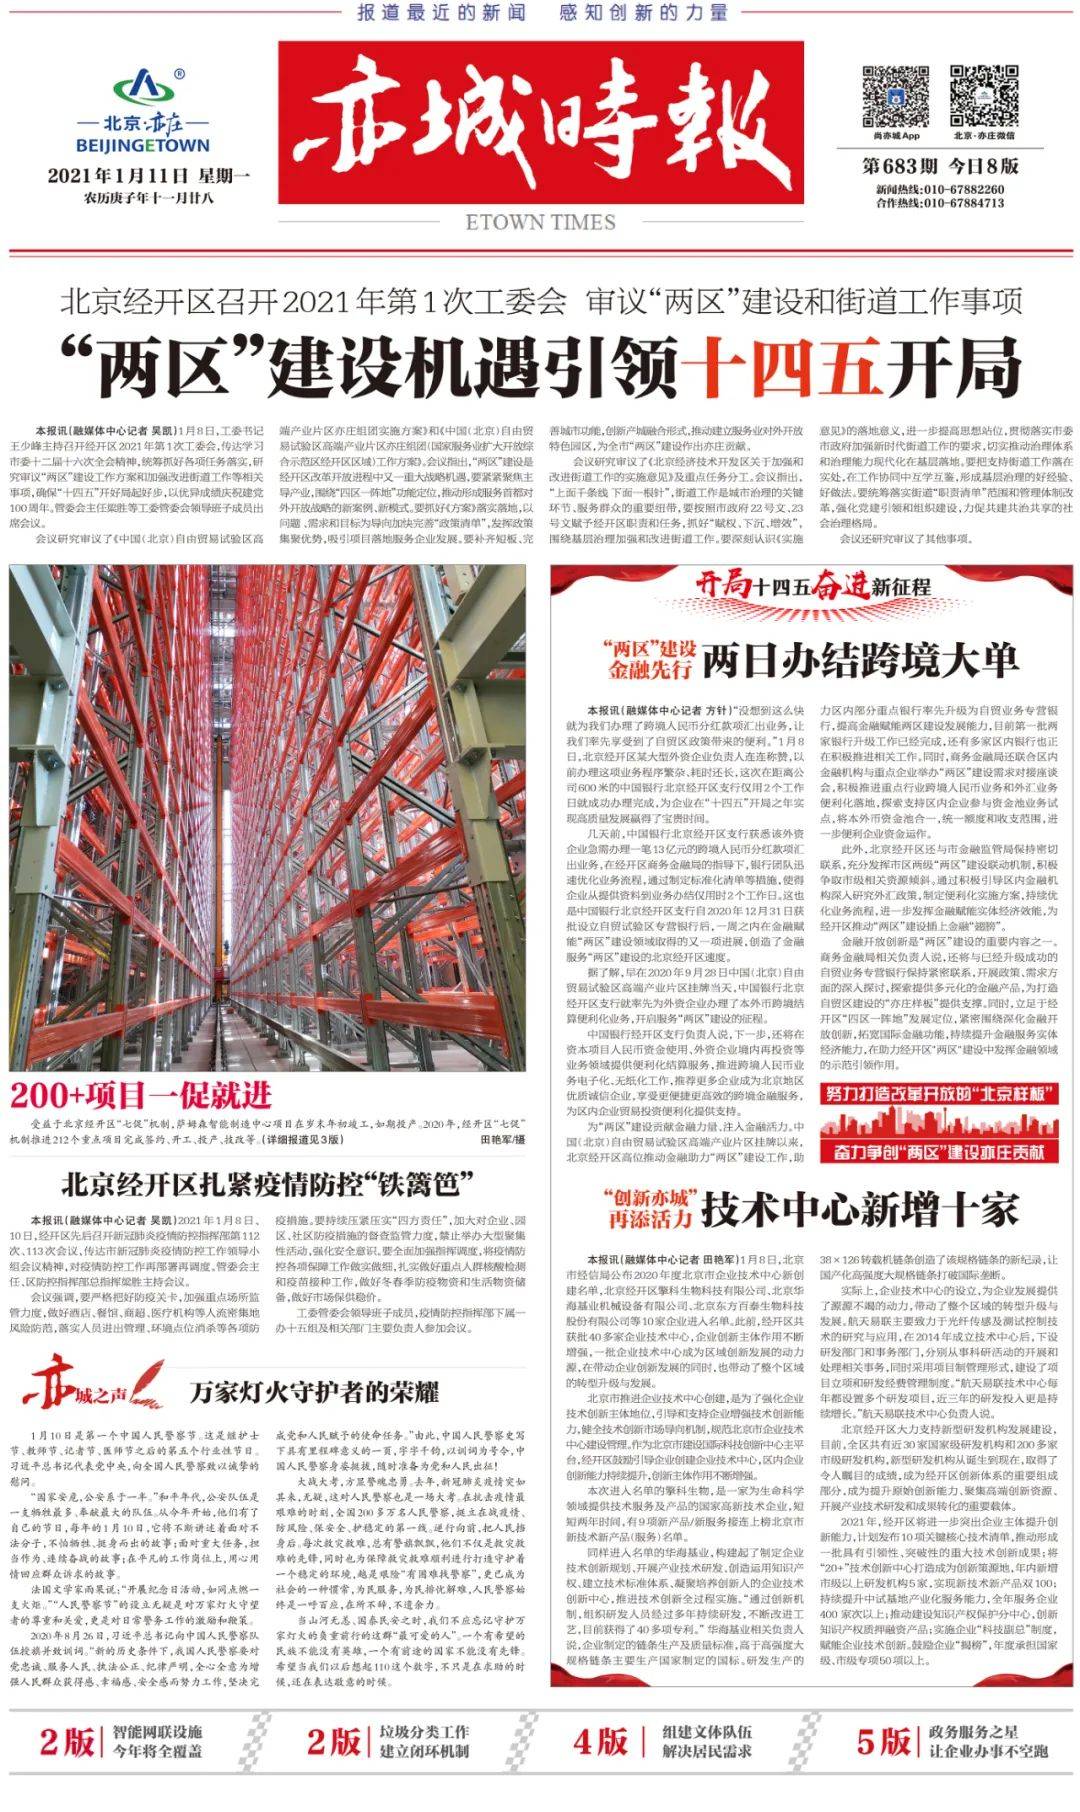 喜讯 中国成欧宝注册达荣登2019 ENR建筑时报“中国工程设计企业60强”